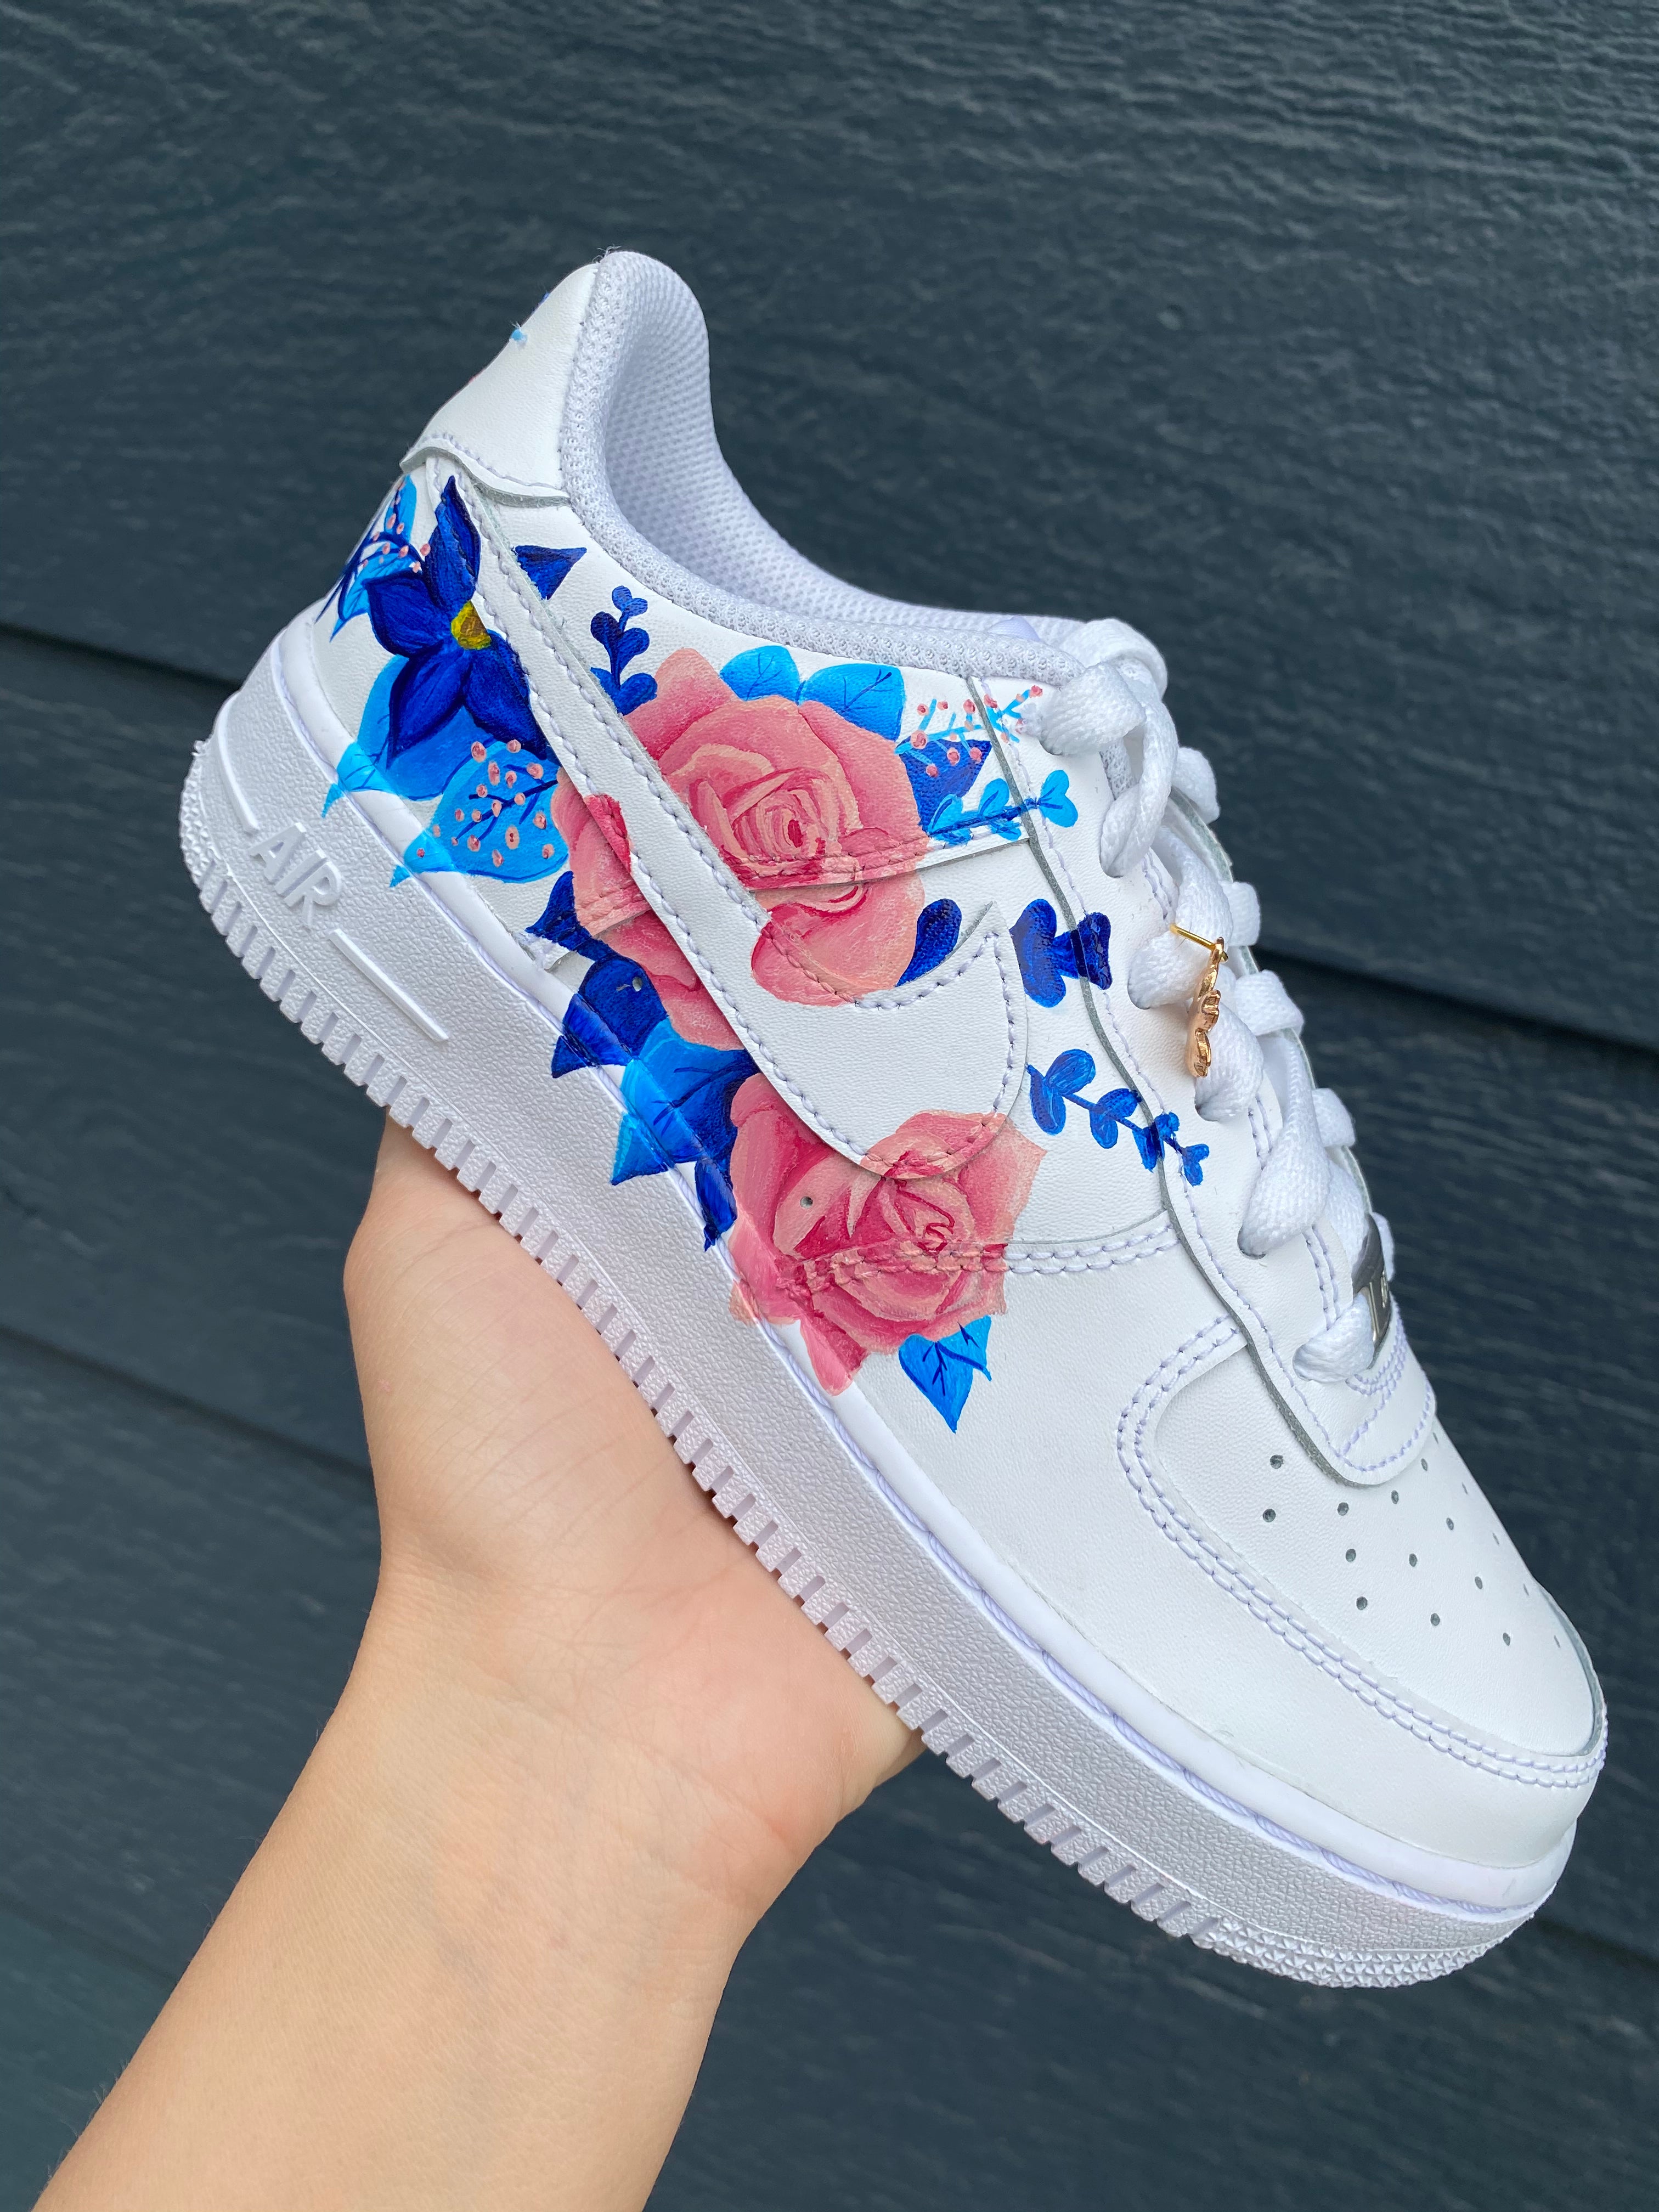 Blue Flowers Custom Air Force 1 Sneakers